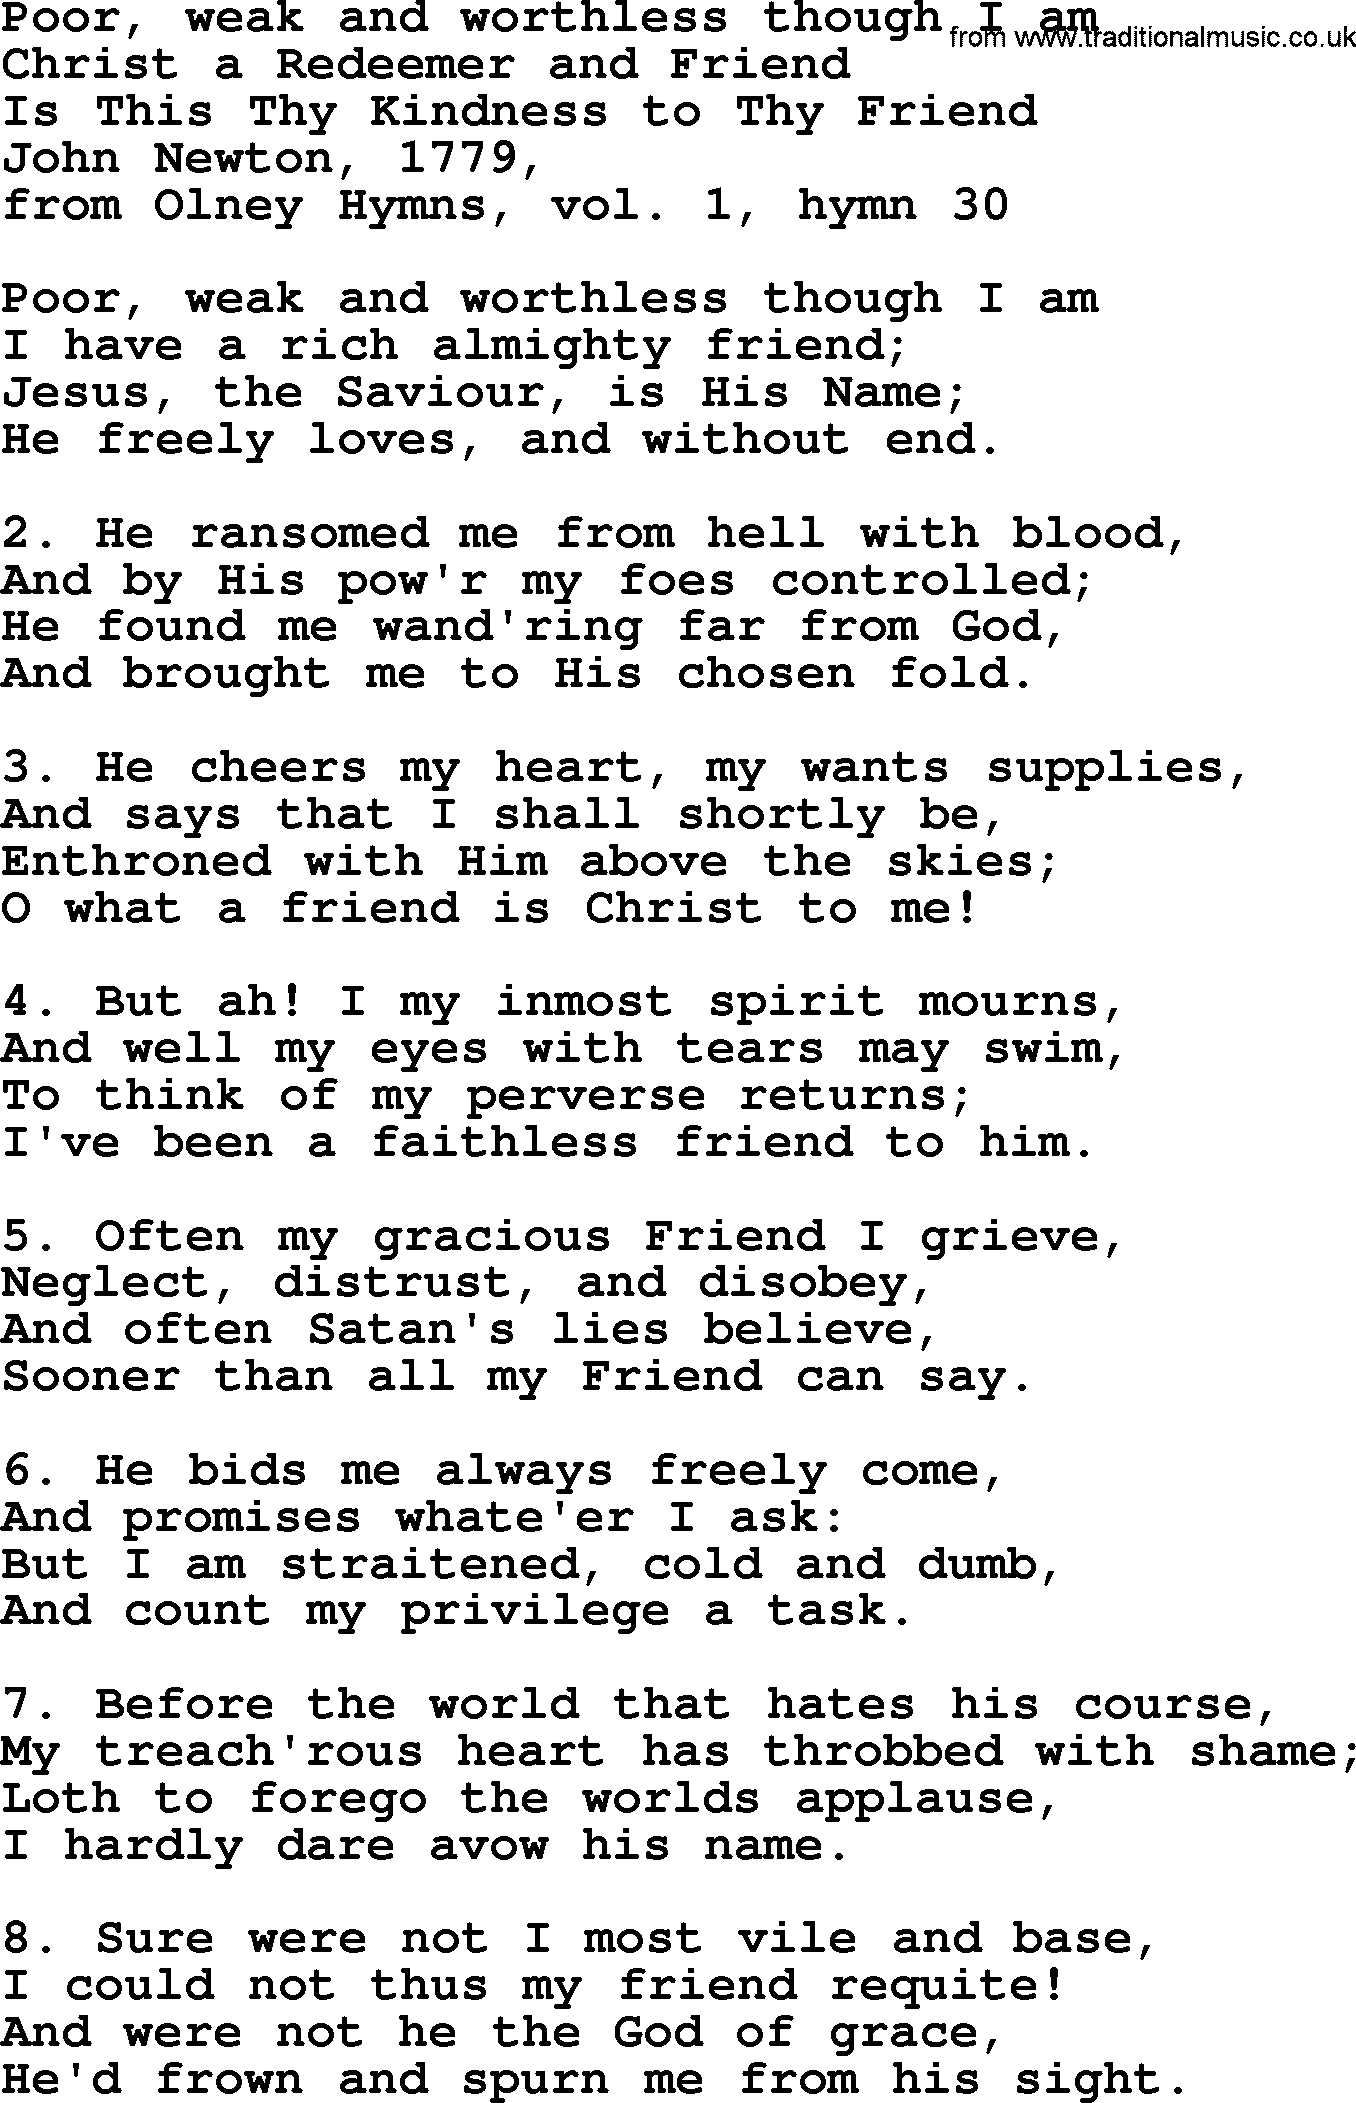 John Newton hymn: Poor, Weak And Worthless Though I Am, lyrics